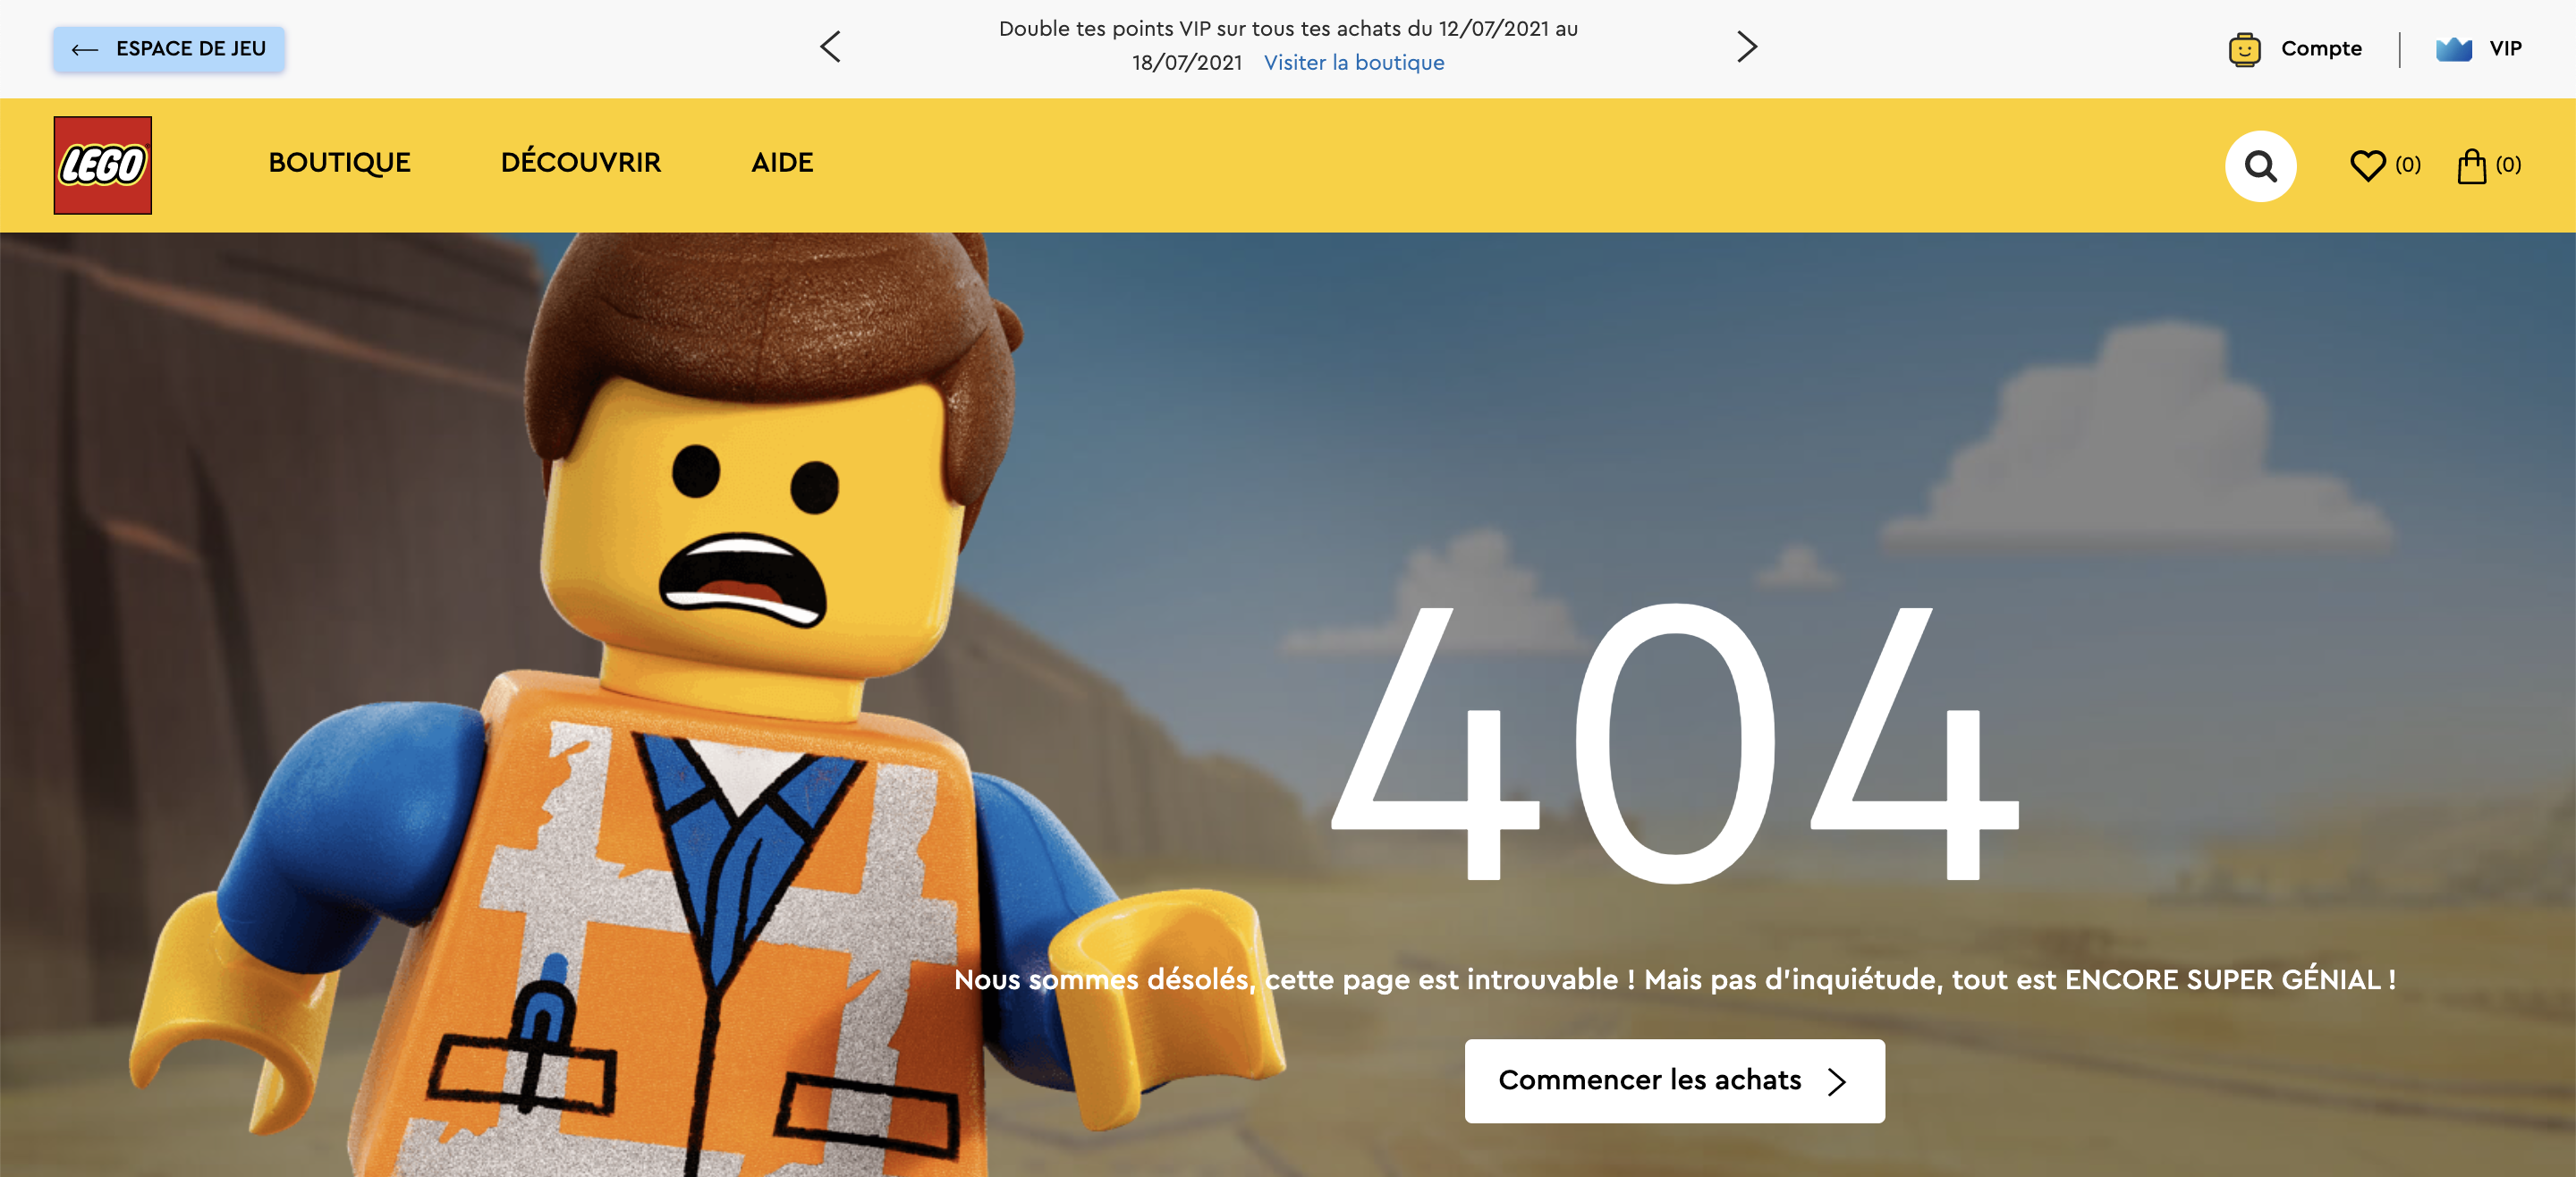 LEGO 404